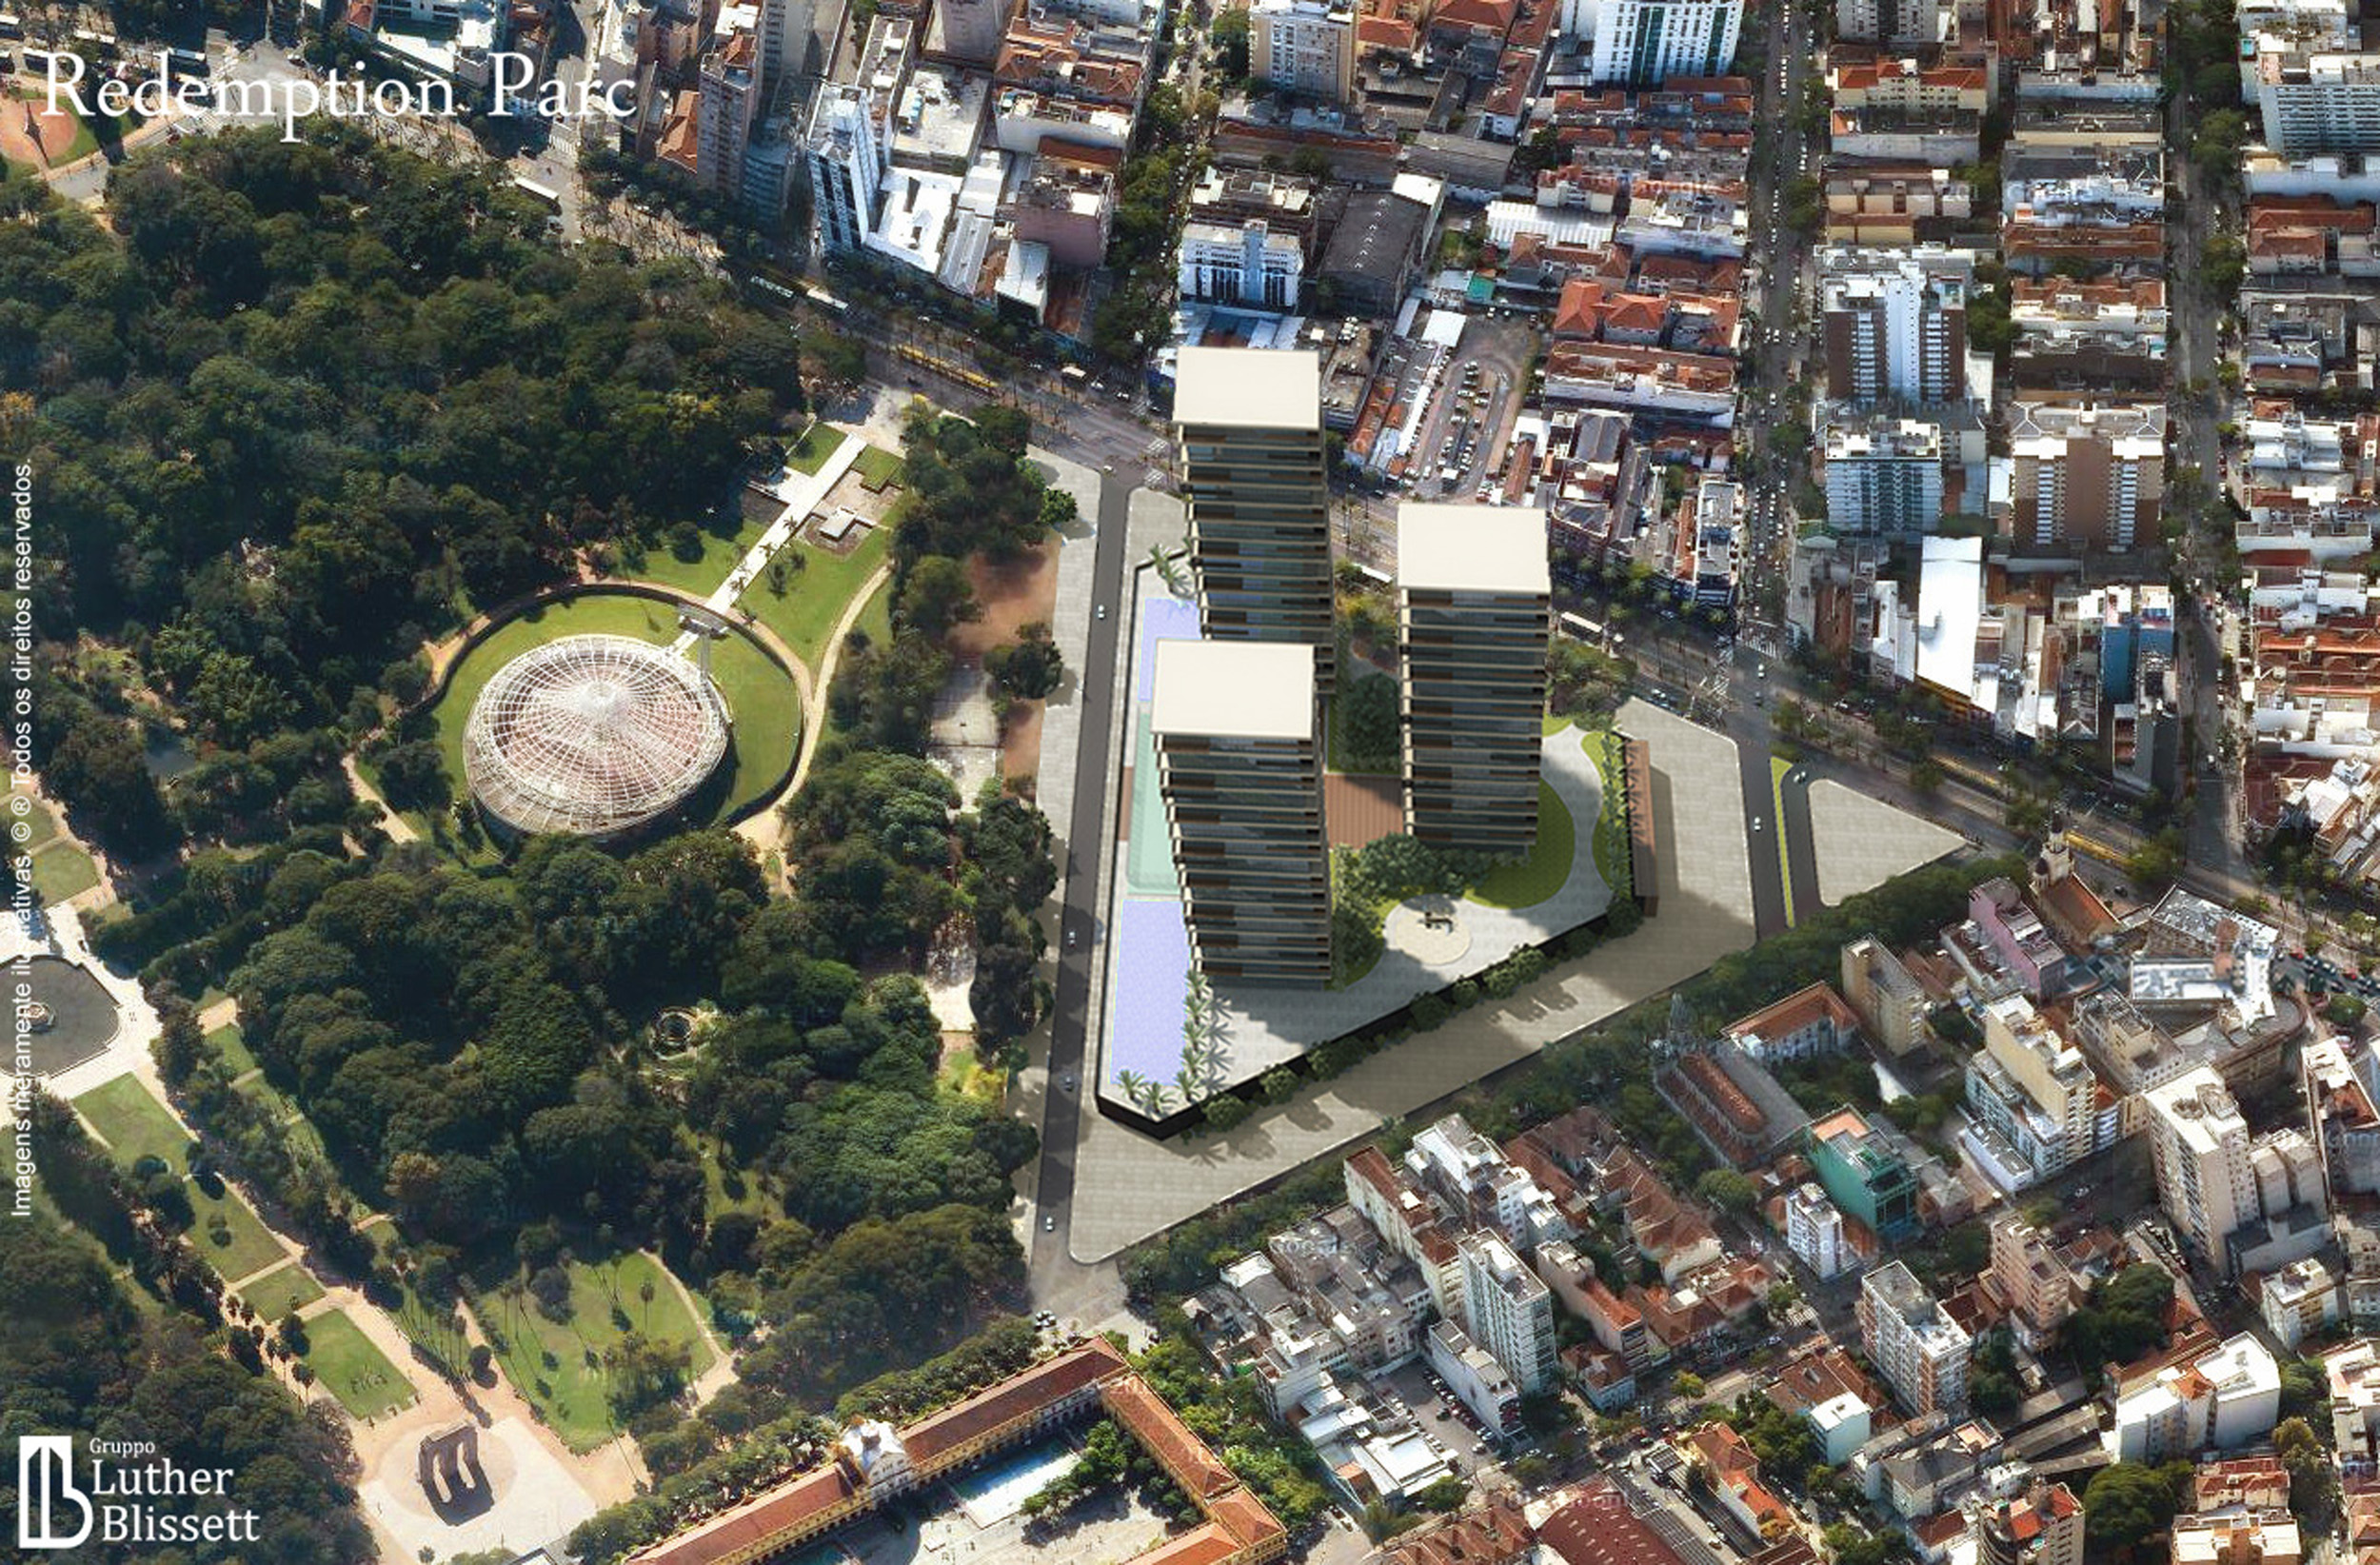  Figura 1 – Vista aérea do Parque Farroupilha, com a simulação do empreendimento Rédemption Parc. [imagem de satélite obtida pelo Google Maps e editada posteriormente].